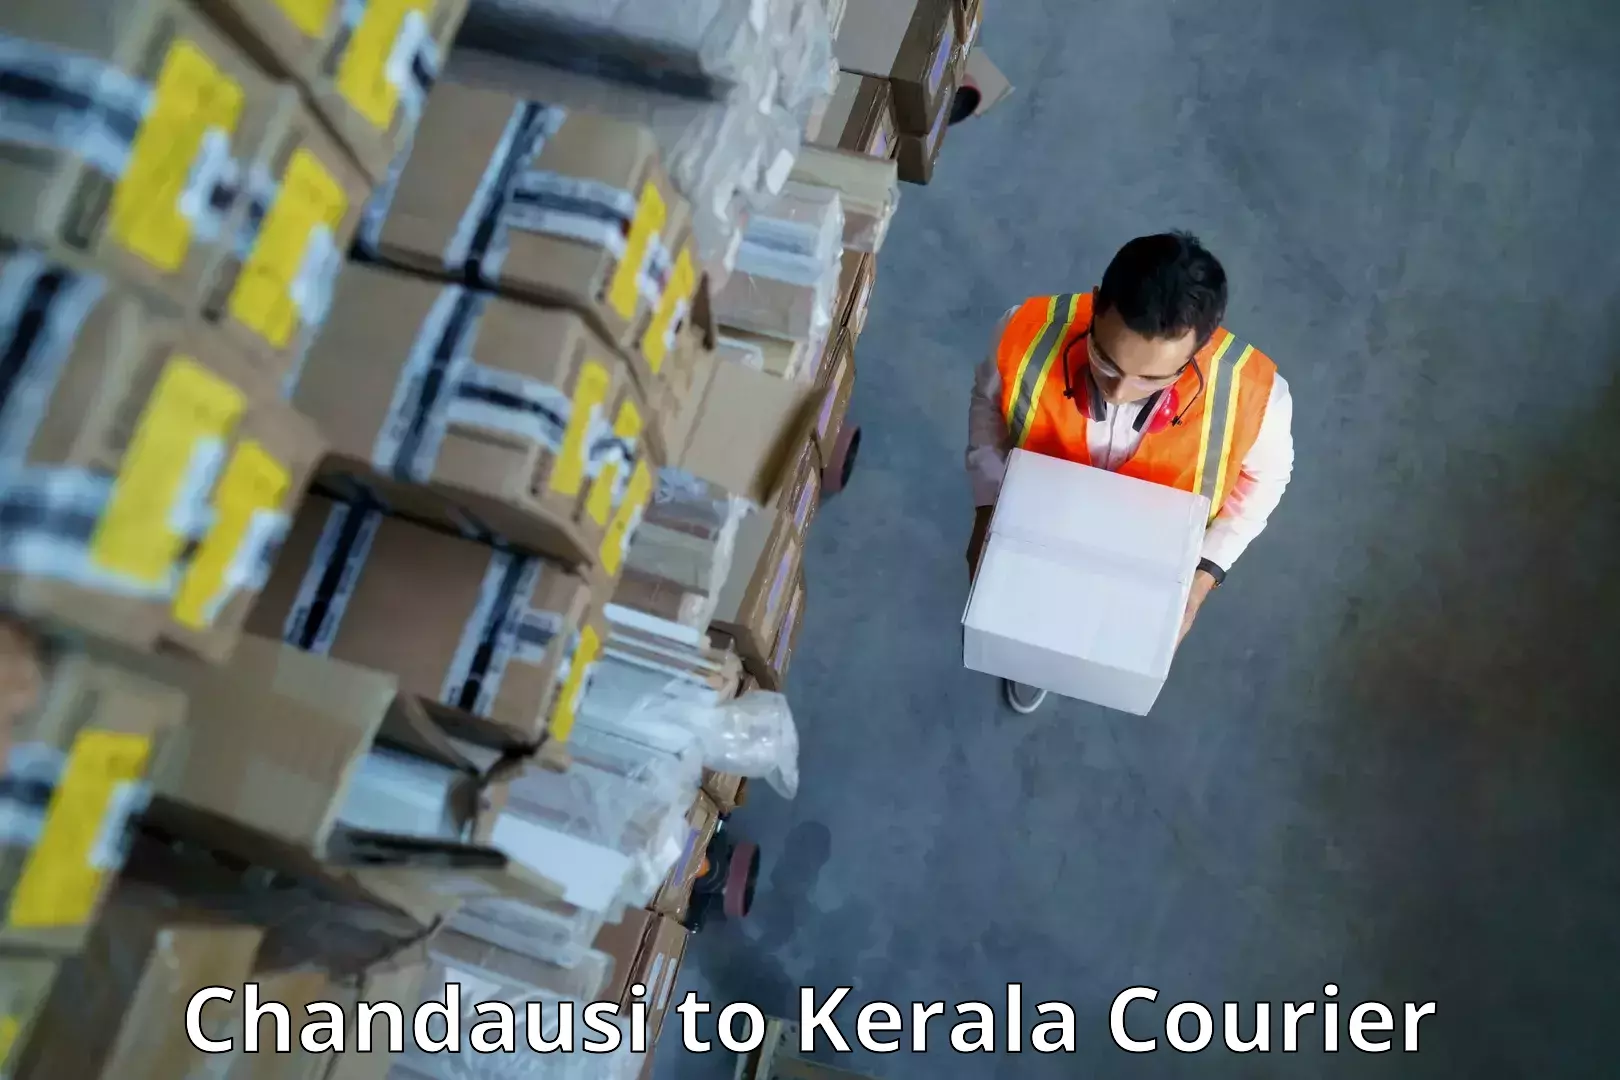 Efficient parcel service Chandausi to Kozhikode